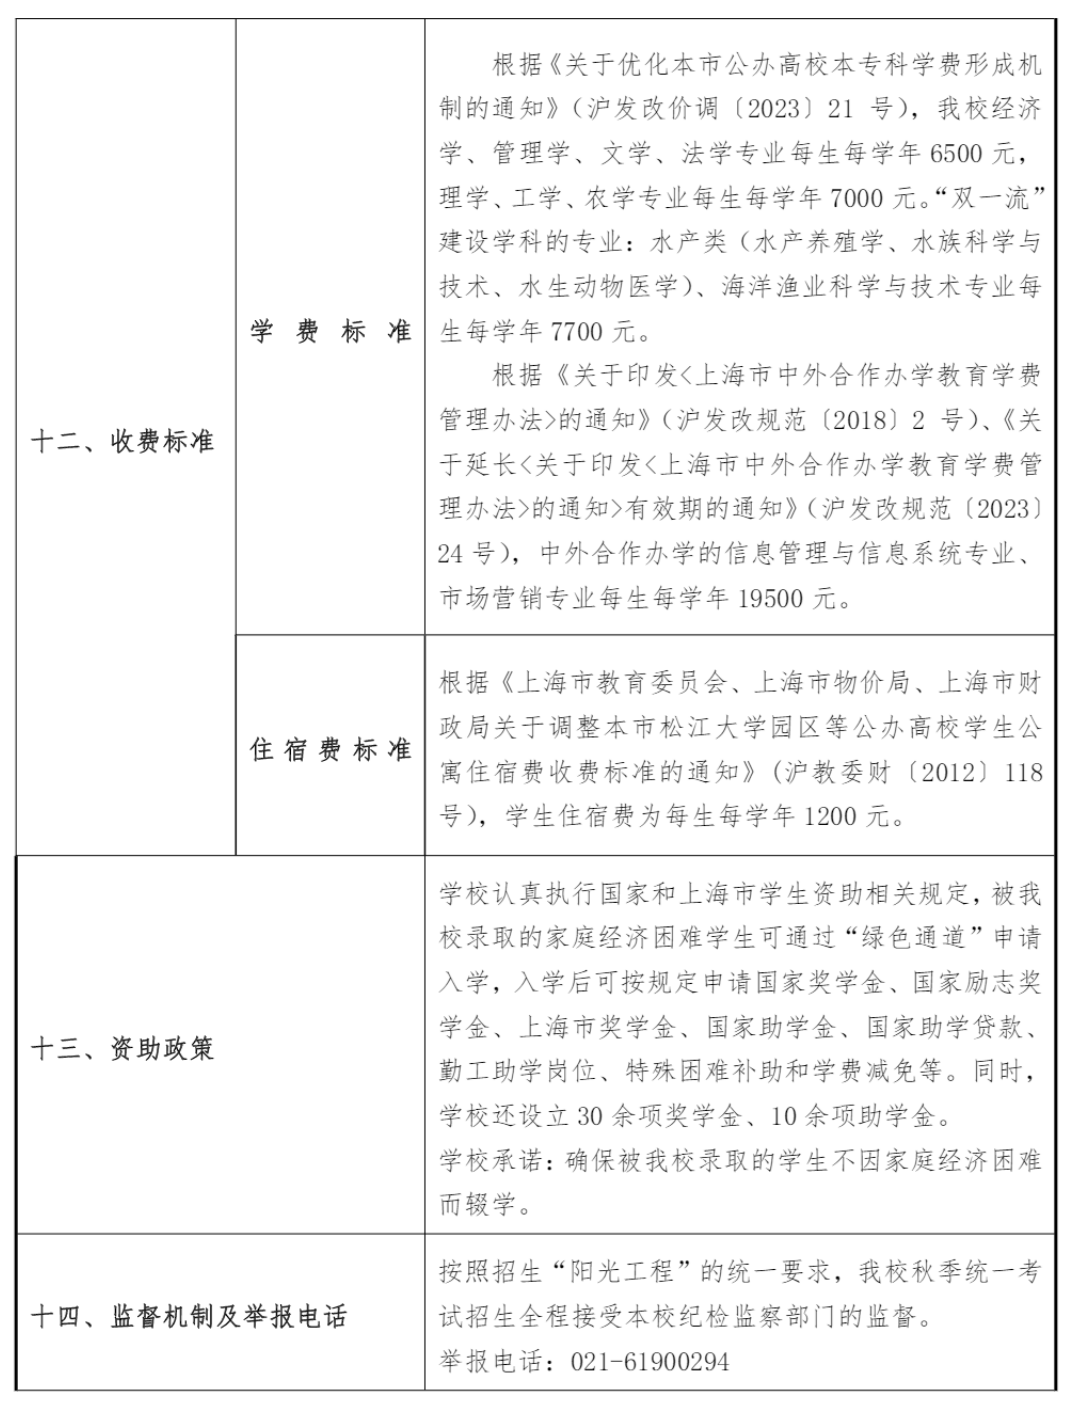 上海海洋大学－2023年学费 / 住宿费标准学费